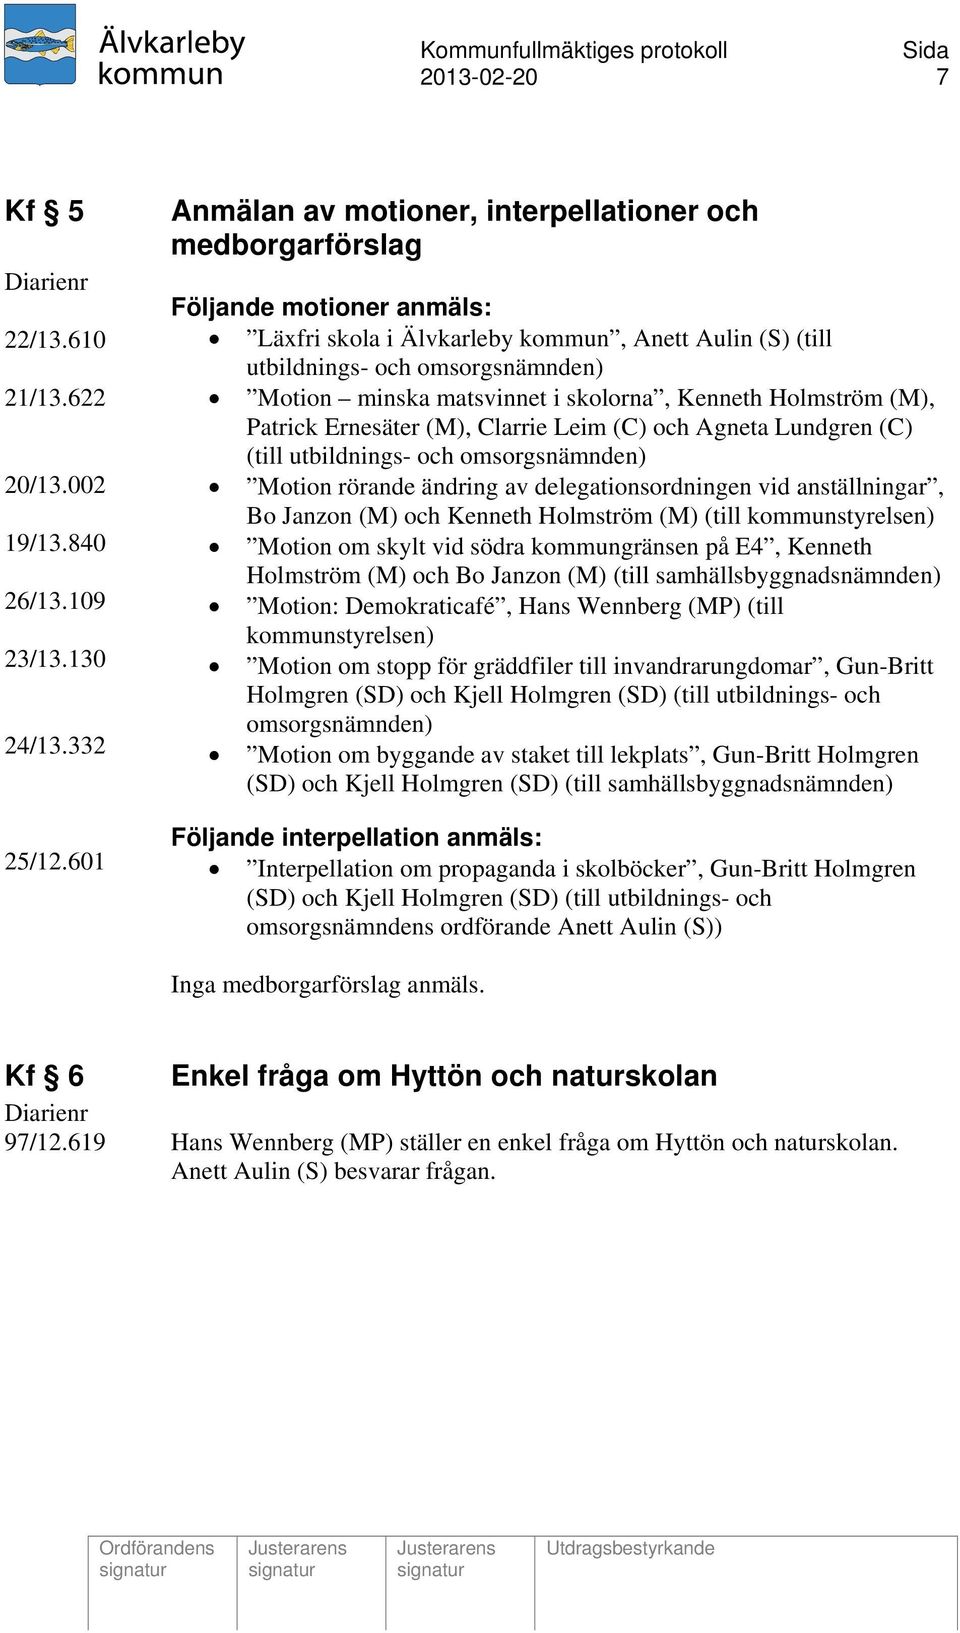 matsvinnet i skolorna, Kenneth Holmström (M), Patrick Ernesäter (M), Clarrie Leim (C) och Agneta Lundgren (C) (till utbildnings- och omsorgsnämnden) Motion rörande ändring av delegationsordningen vid